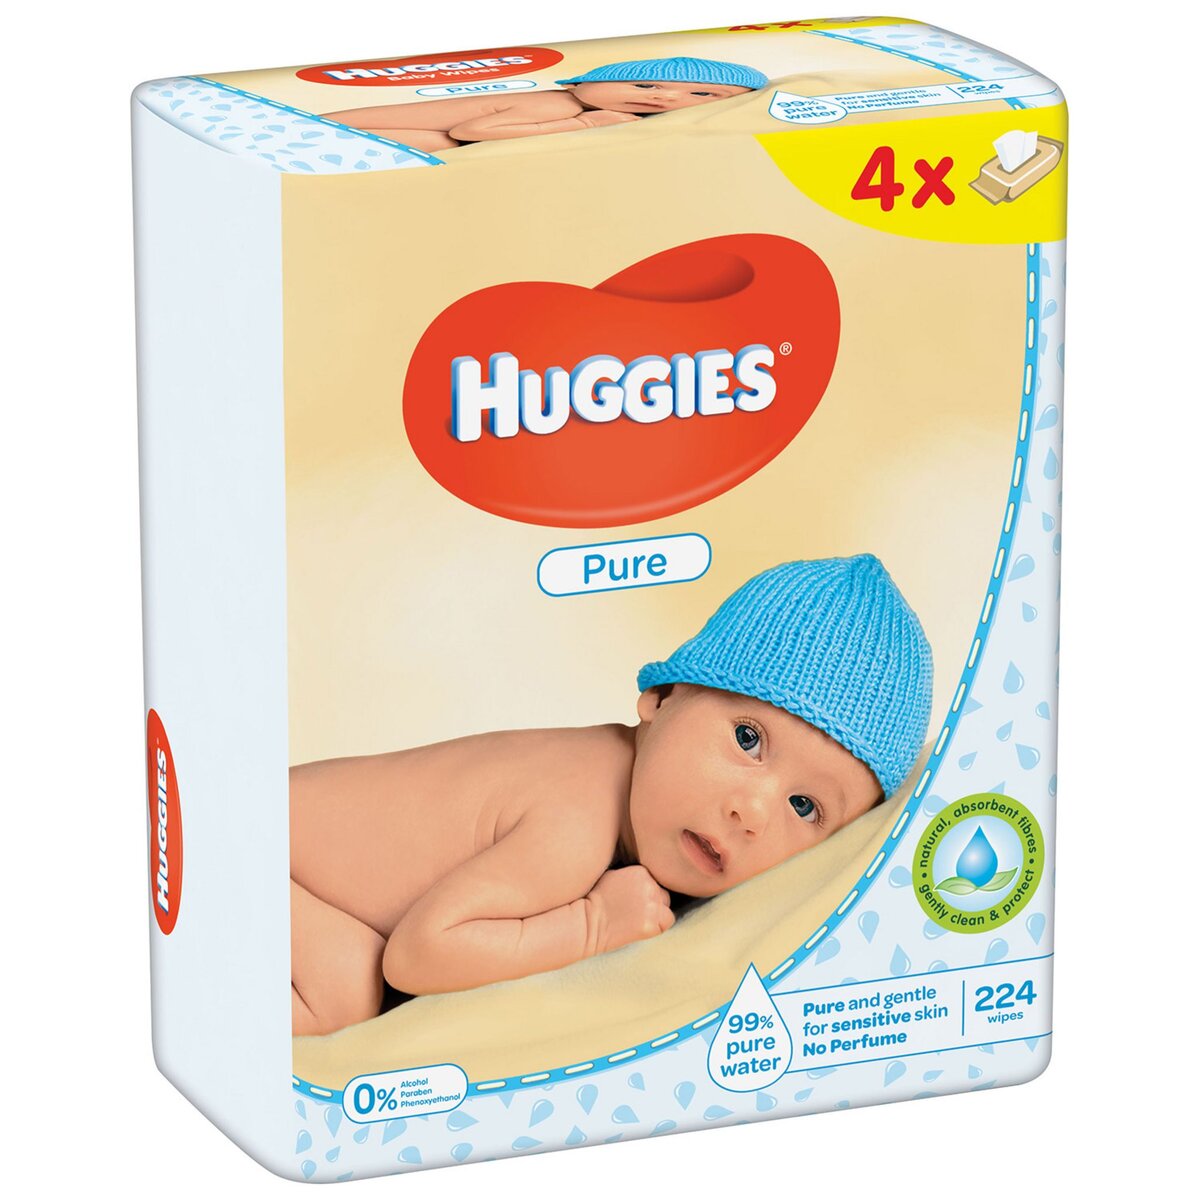 HUGGIES Pure lot lingettes nettoyantes pour bébé 168 lingettes